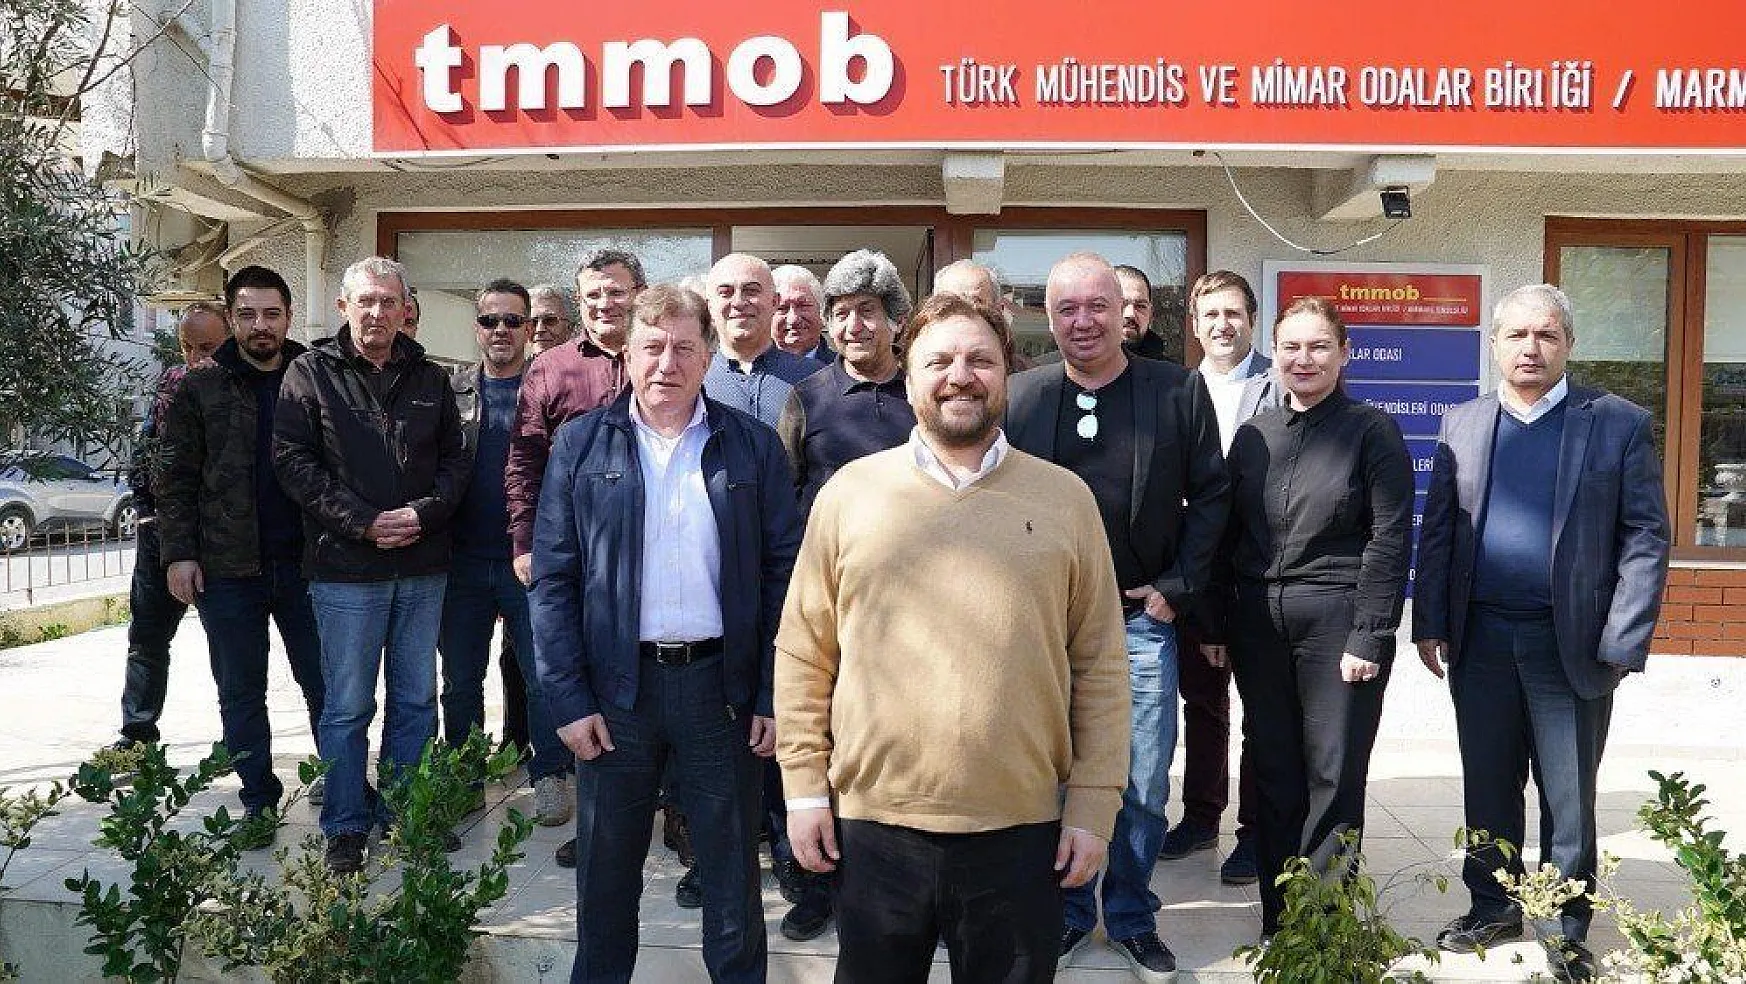 TMMOB üyeleri, Yazıcı'dan trafik ve yapı denetimi sorunlarını çözmesini istedi